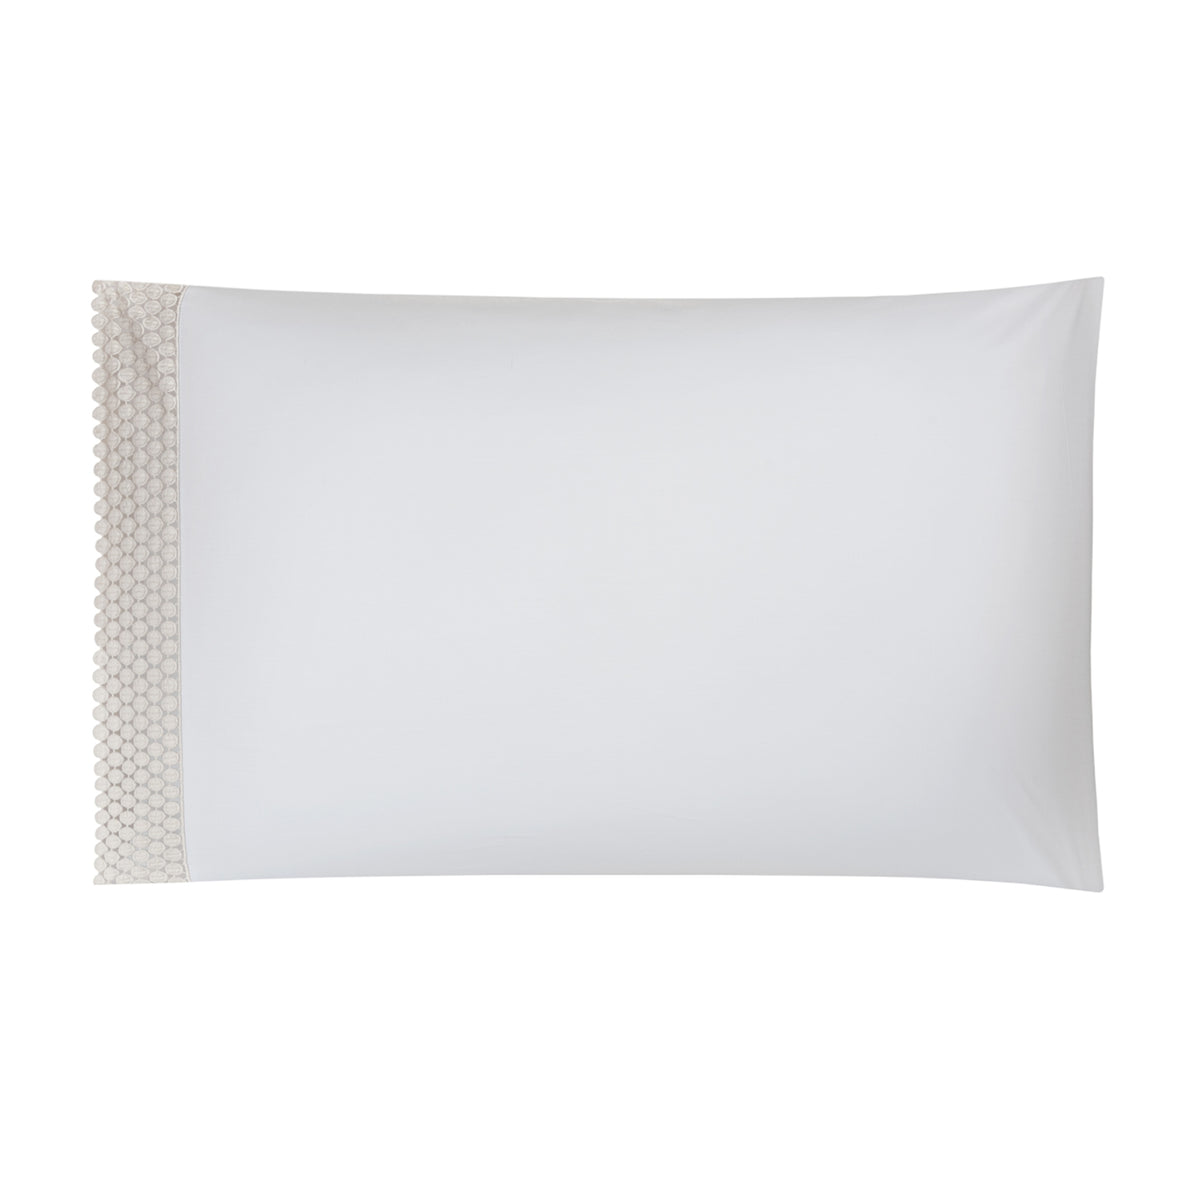 BOVI Magnolia Bedding Collection Pillowcase White/Flax Fine Linens